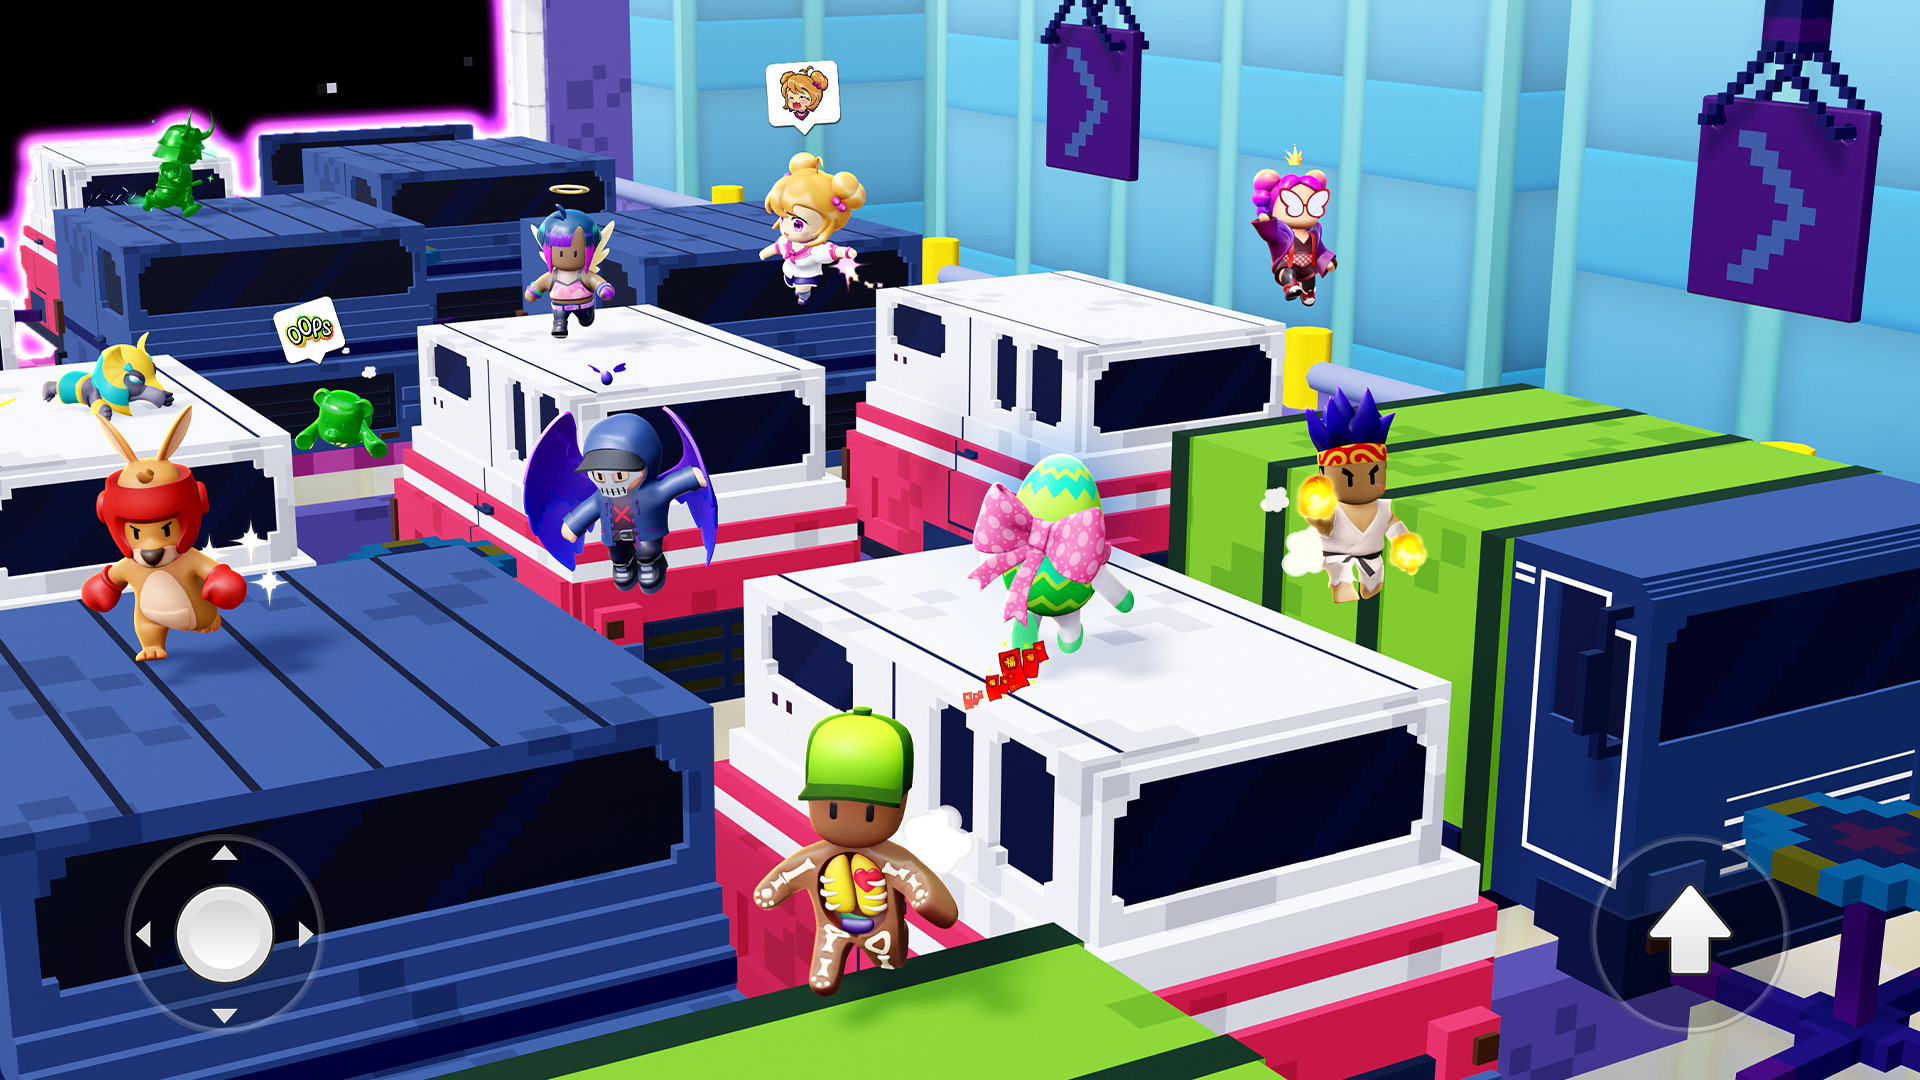 Já conhece o Stumble Guys? Este é o battle royale mais divertido para jogar  com amigos e família - Android - SAPO Tek